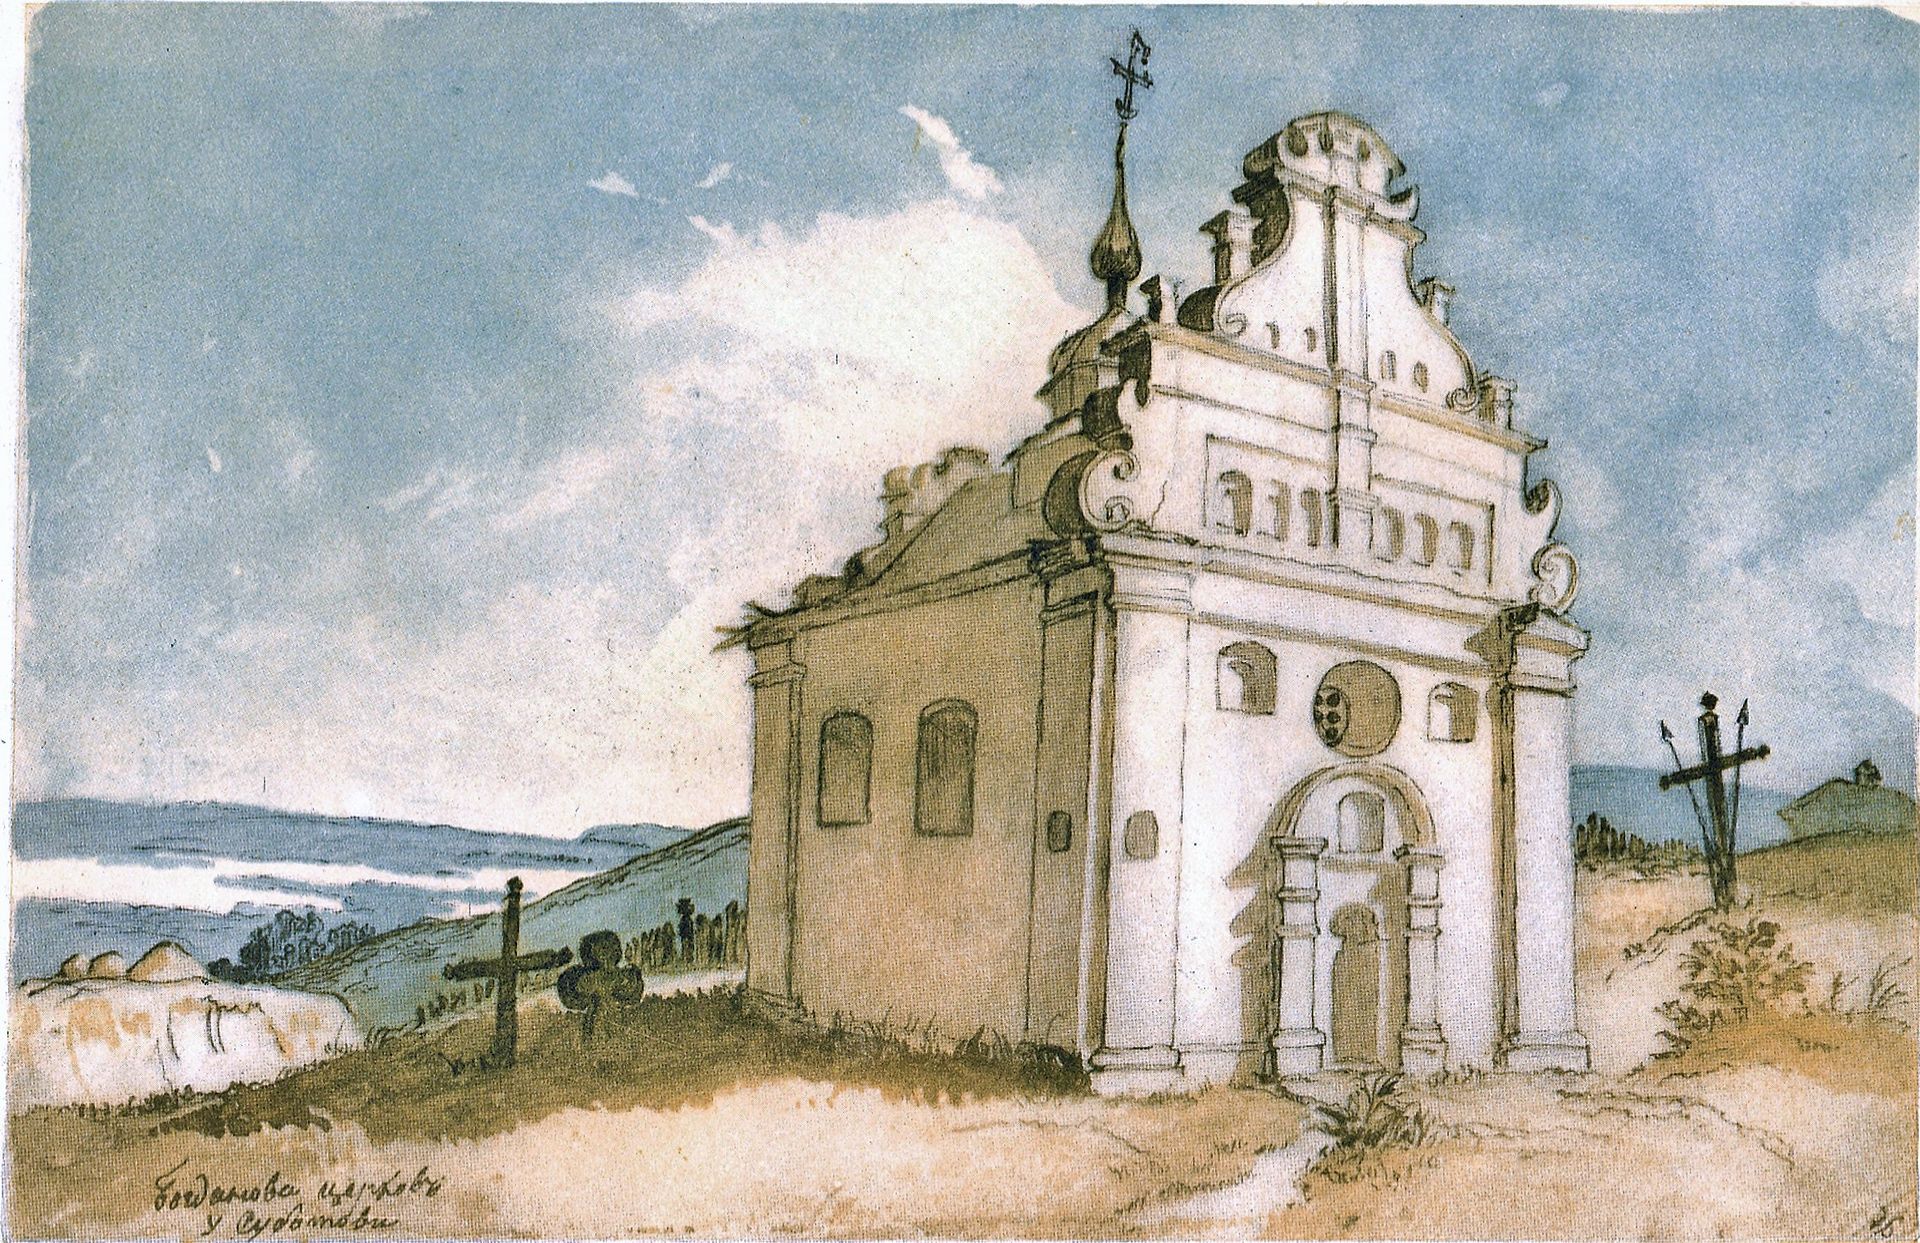 Subotiv church of Bohdan Khmelnytsky